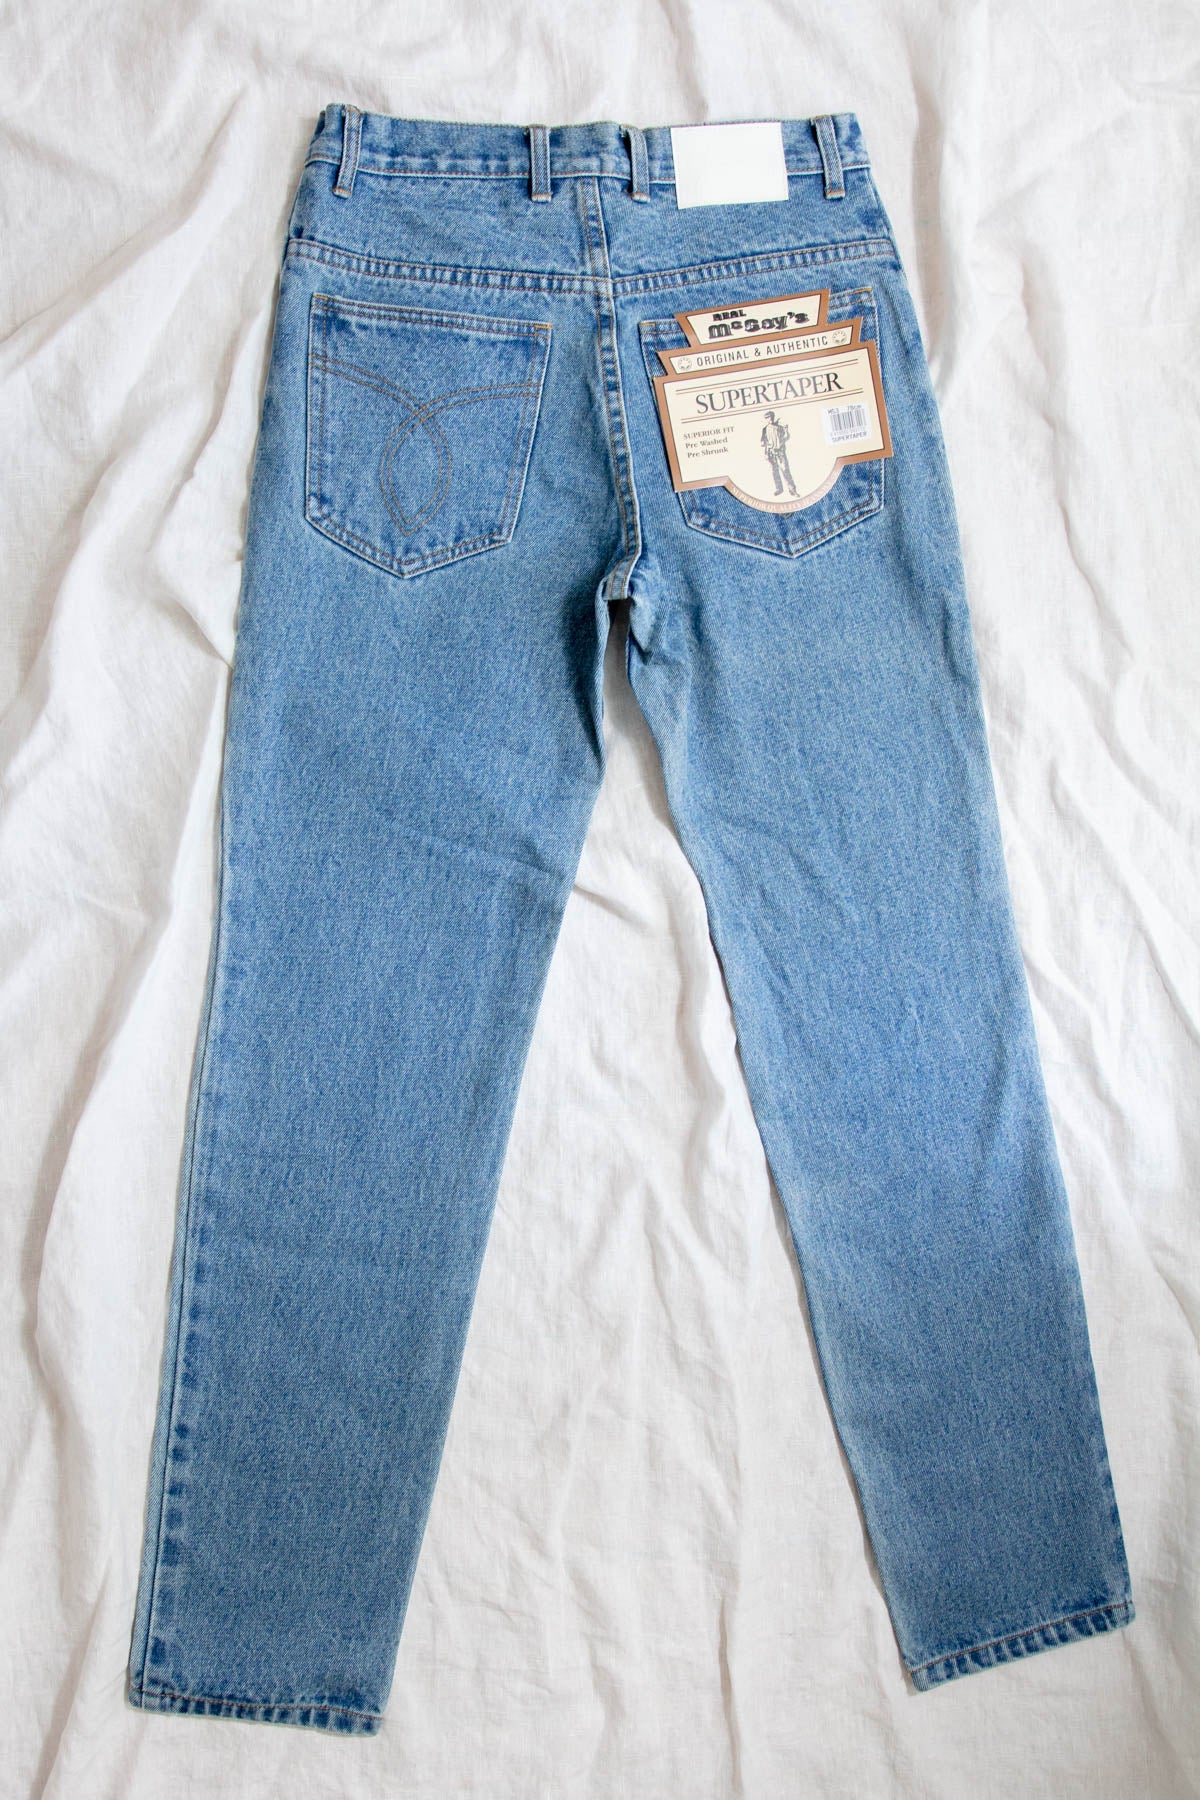 Vintage Deadstock Jeans; Light Blue Tapered